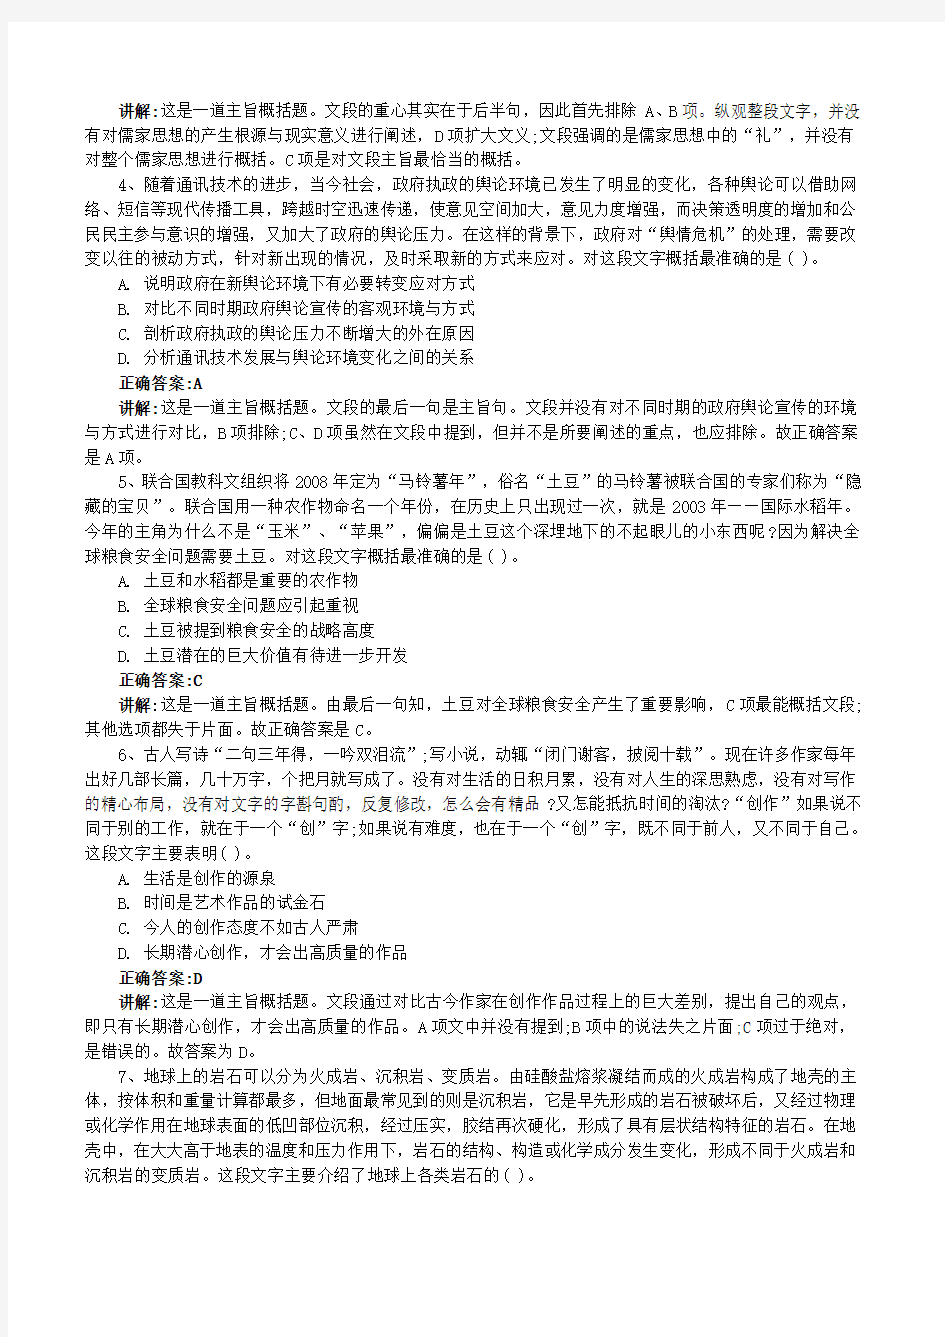 中国人保财险最新招聘笔试面试复习资料包历年完整真题手机app刷题库(DOC)